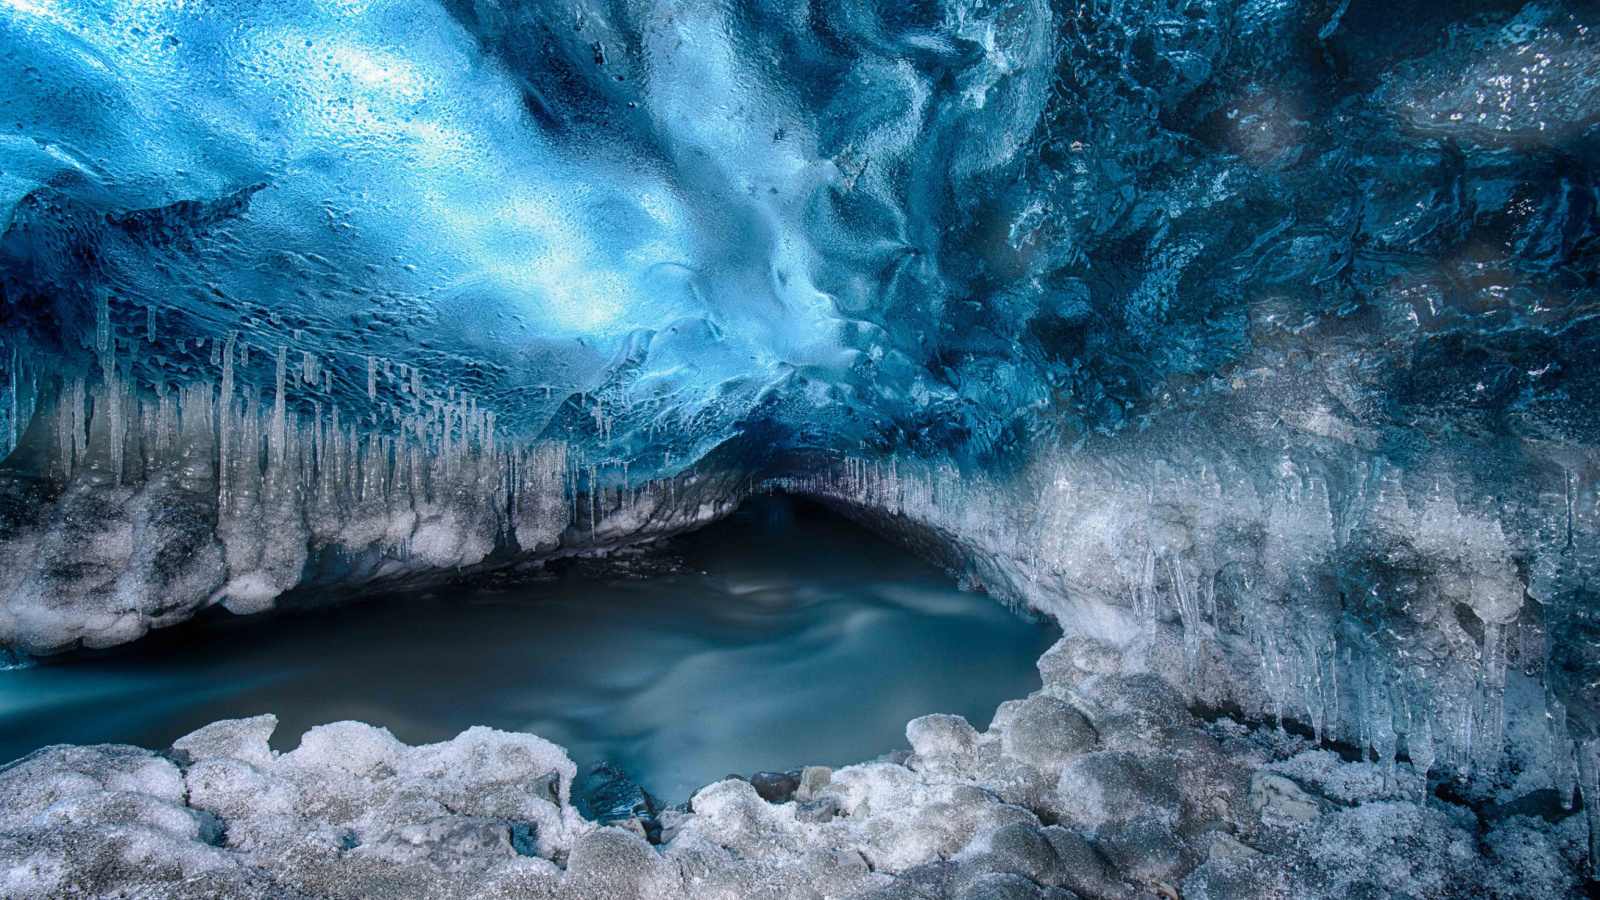 Обои Tunnel in Iceberg Cave 1600x900